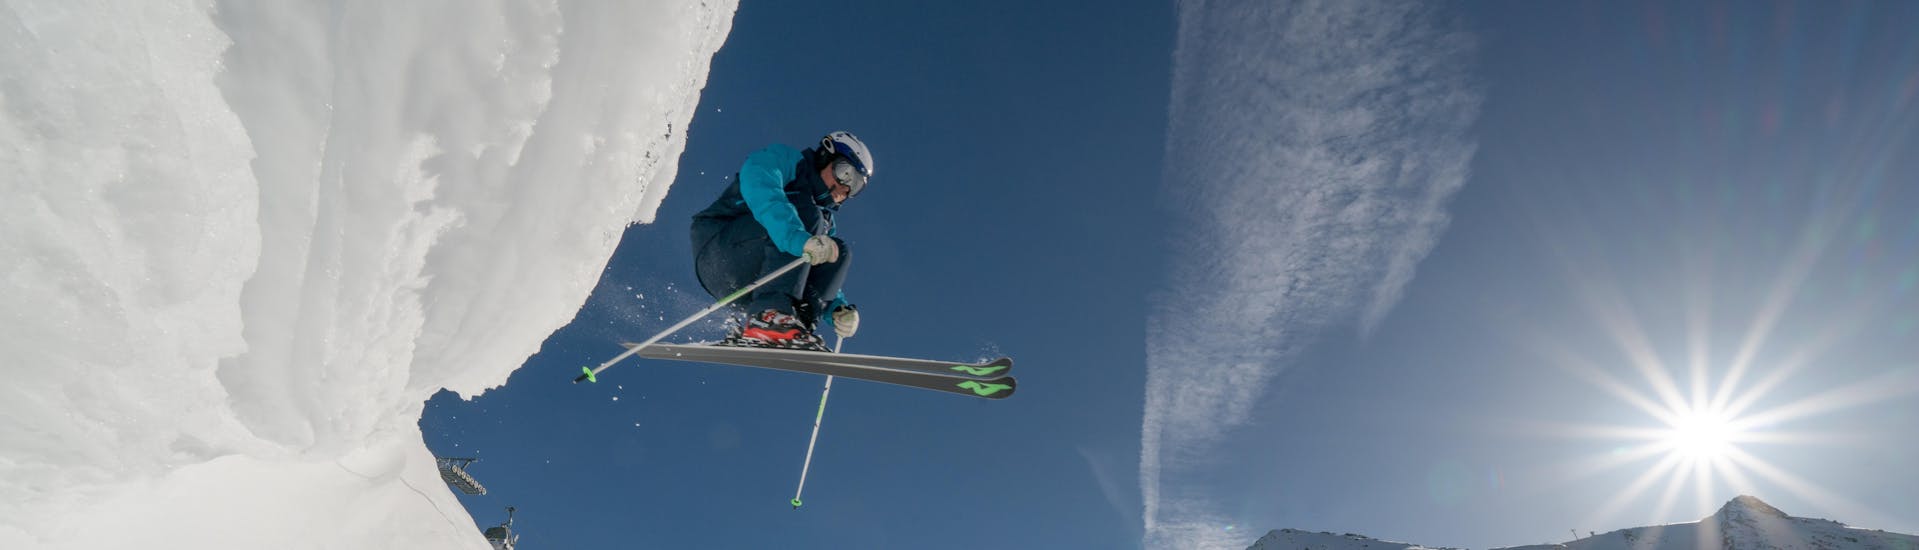 Cours particulier de ski freeride pour Tous niveaux.